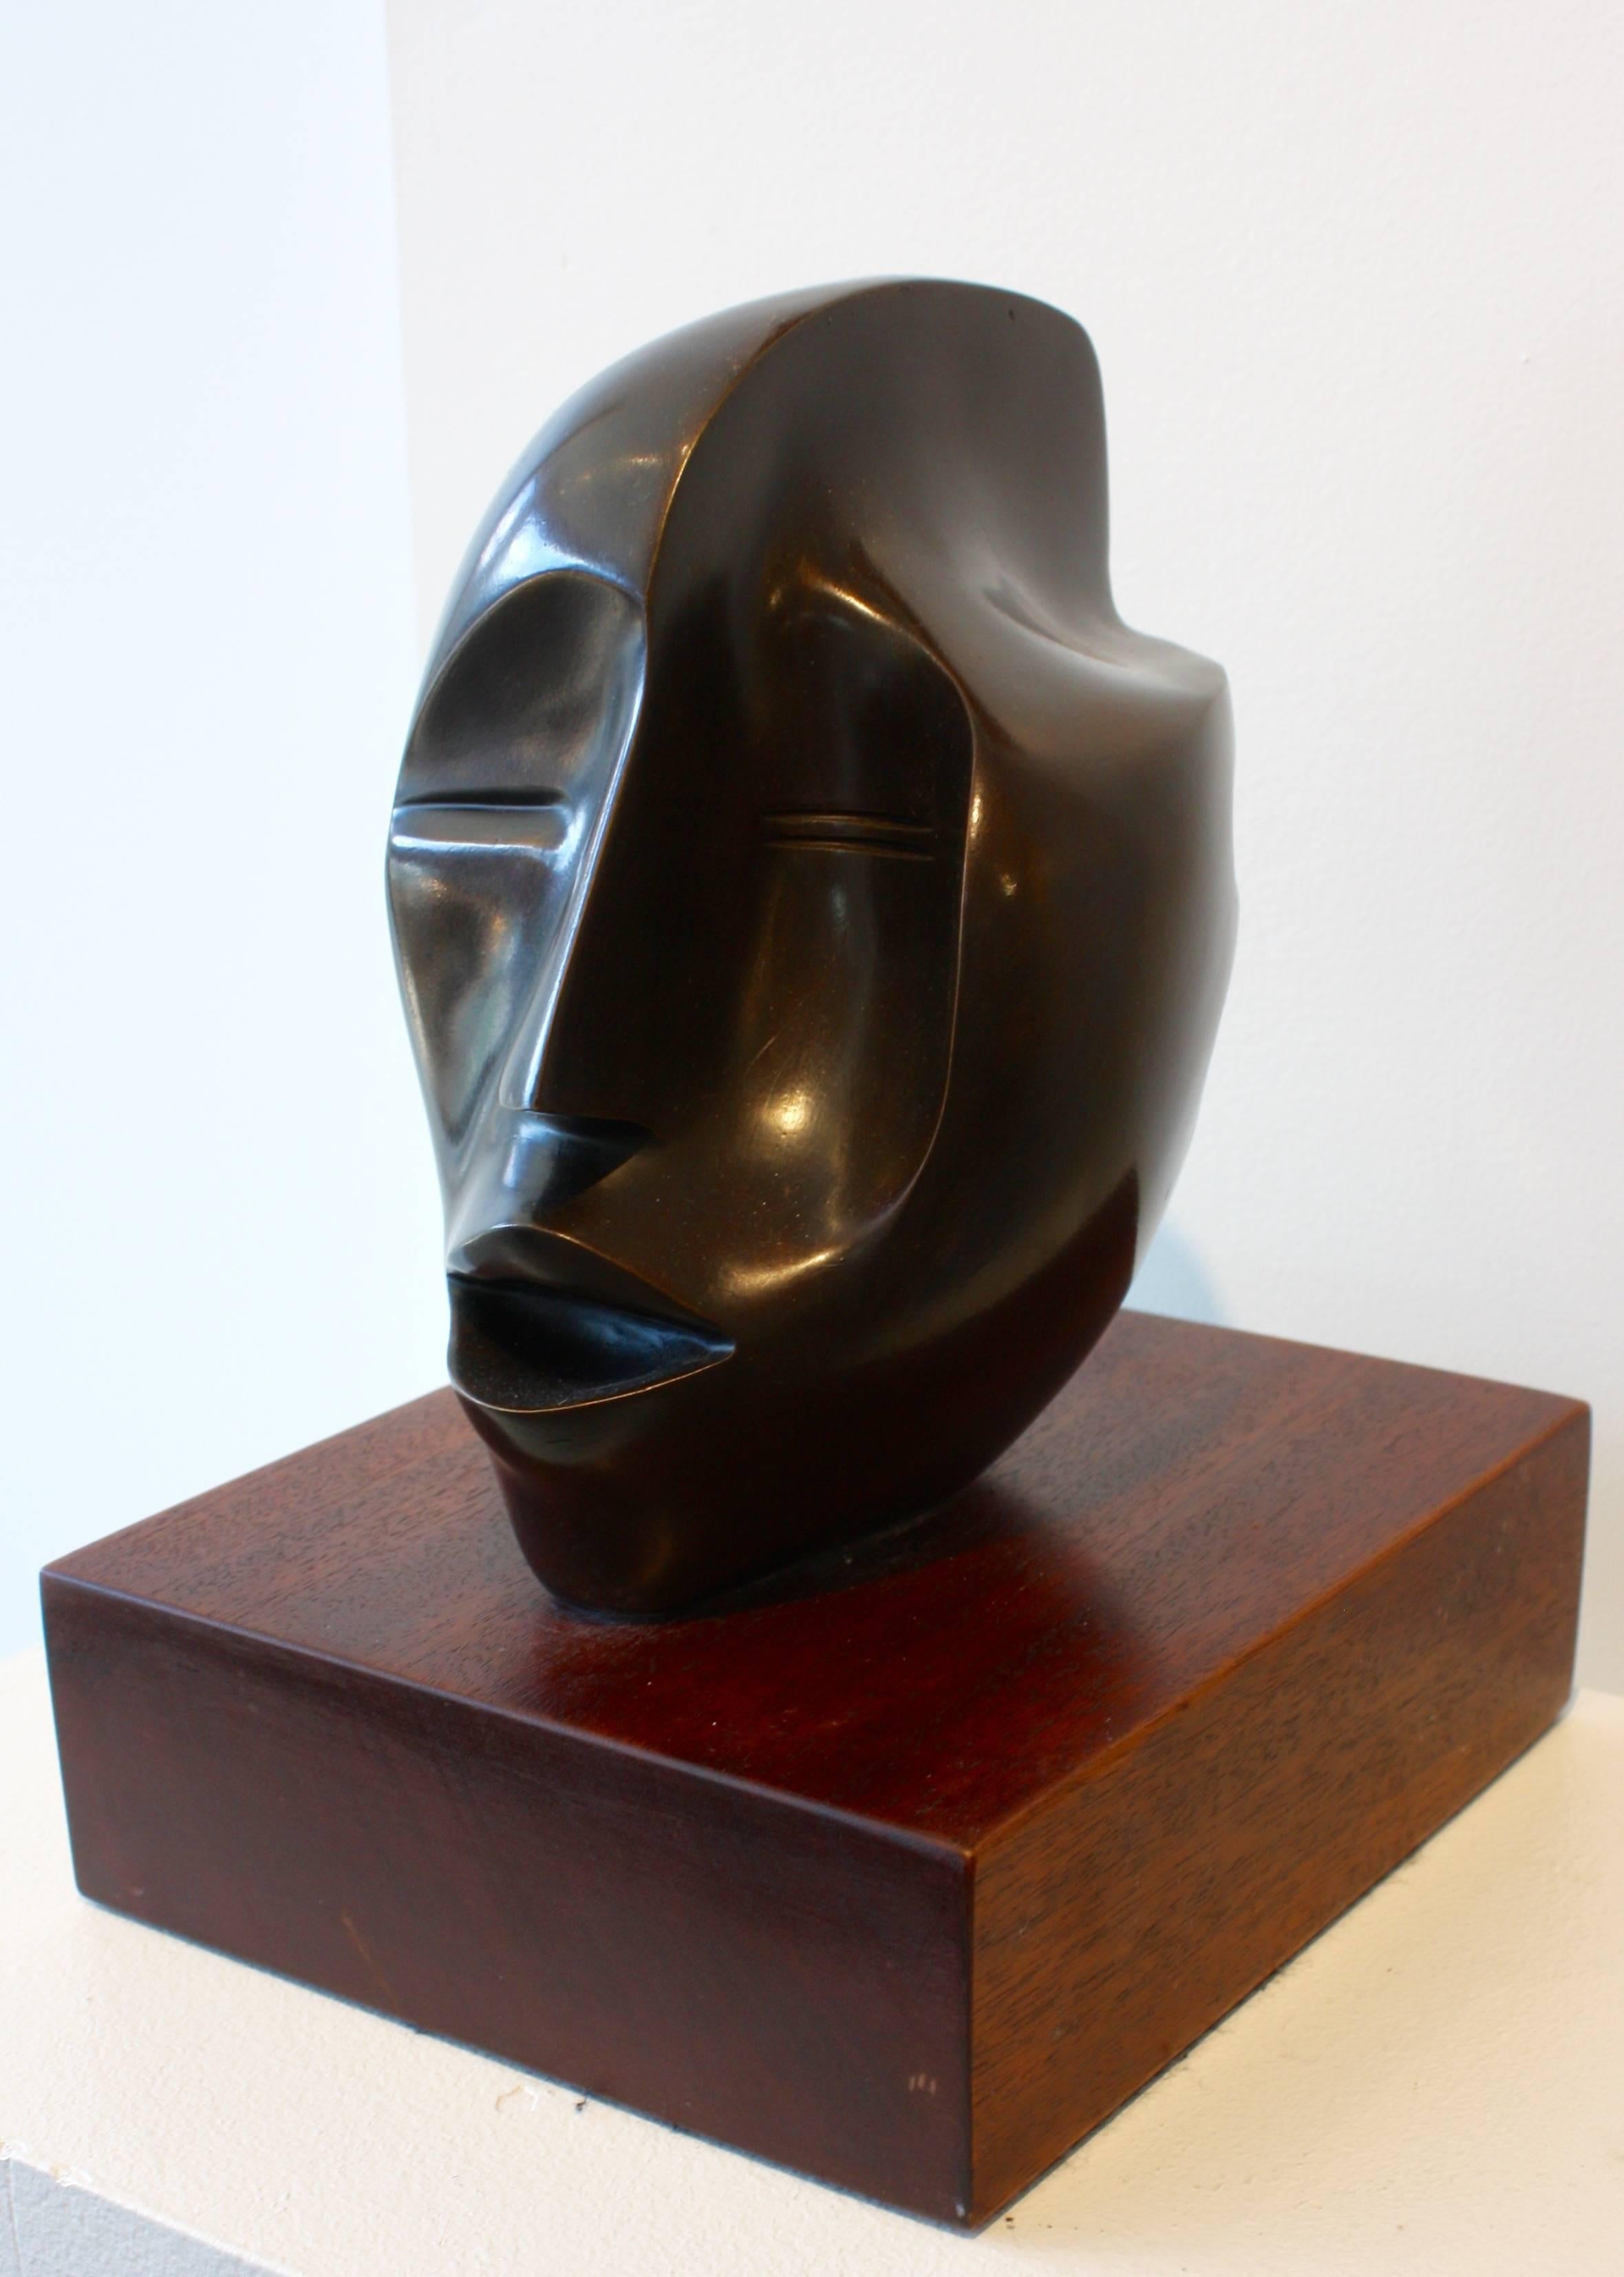 El Canto - Sculpture by Elizabeth Catlett